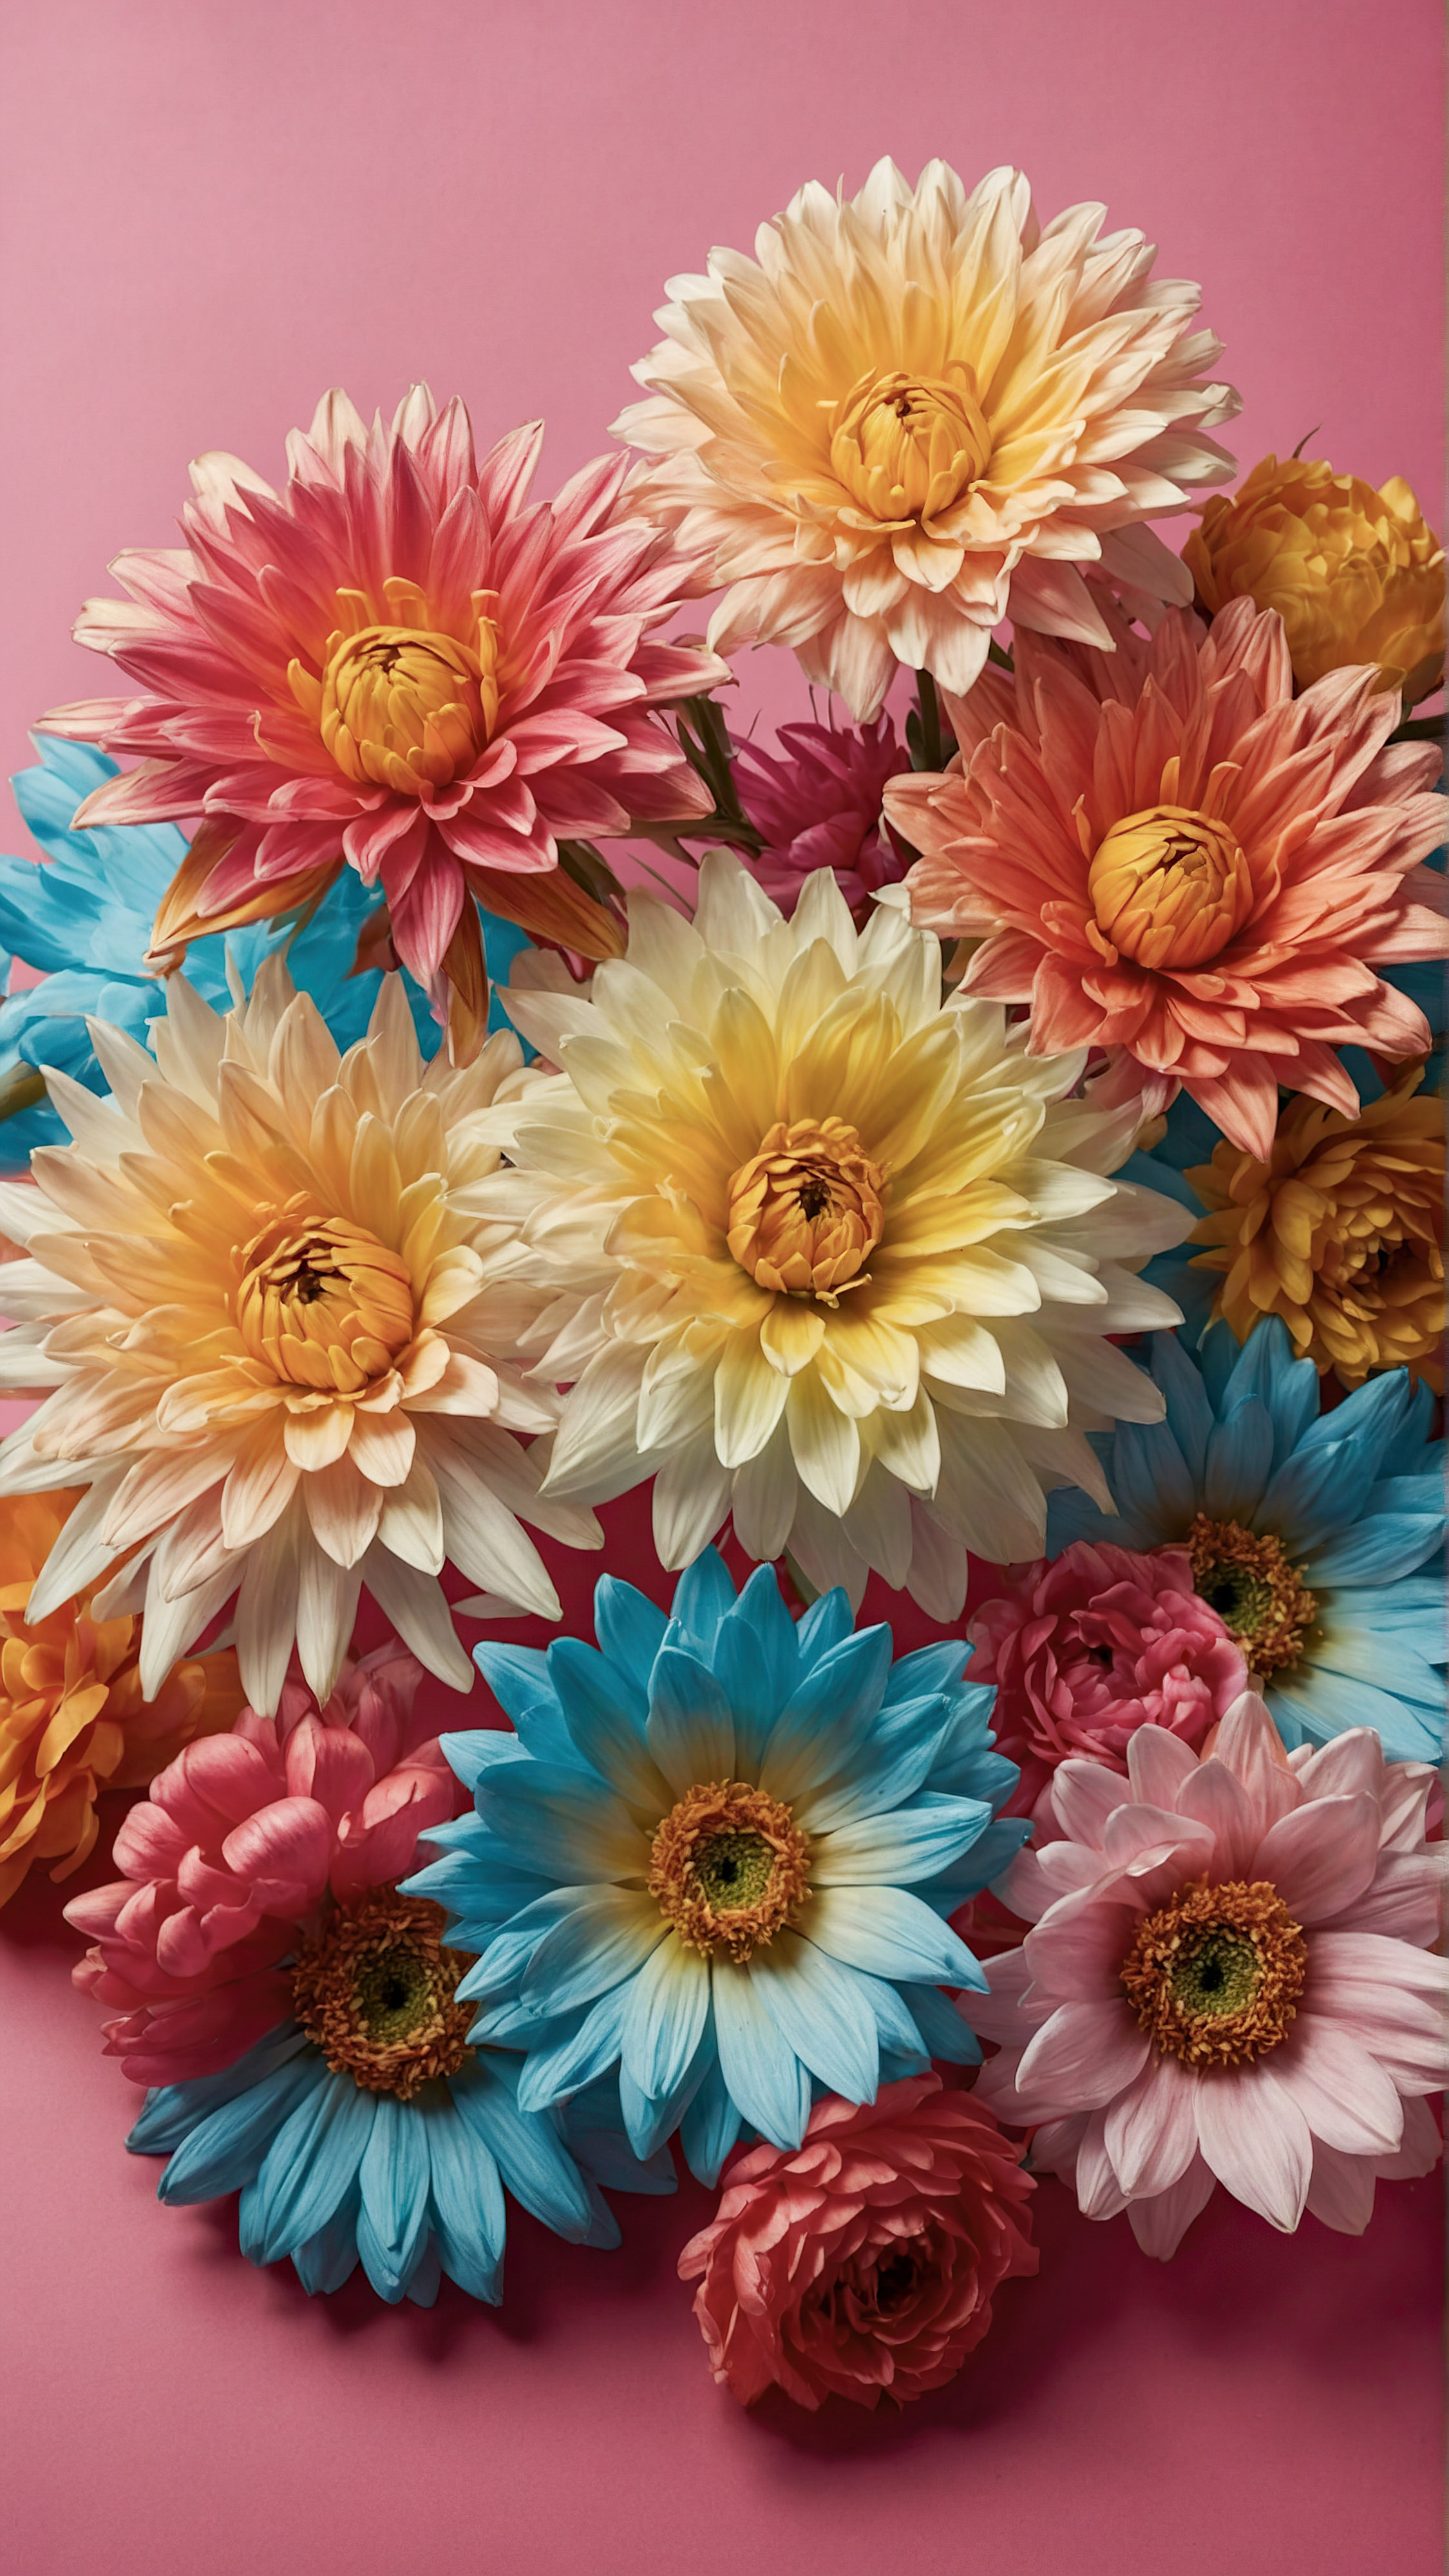 Profitez de la beauté et du style de notre beau fond d'écran pour iPhone, présentant une collection de fleurs artificielles vibrantes avec des pétales et des centres détaillés, placés contre un arrière-plan rose contrastant.